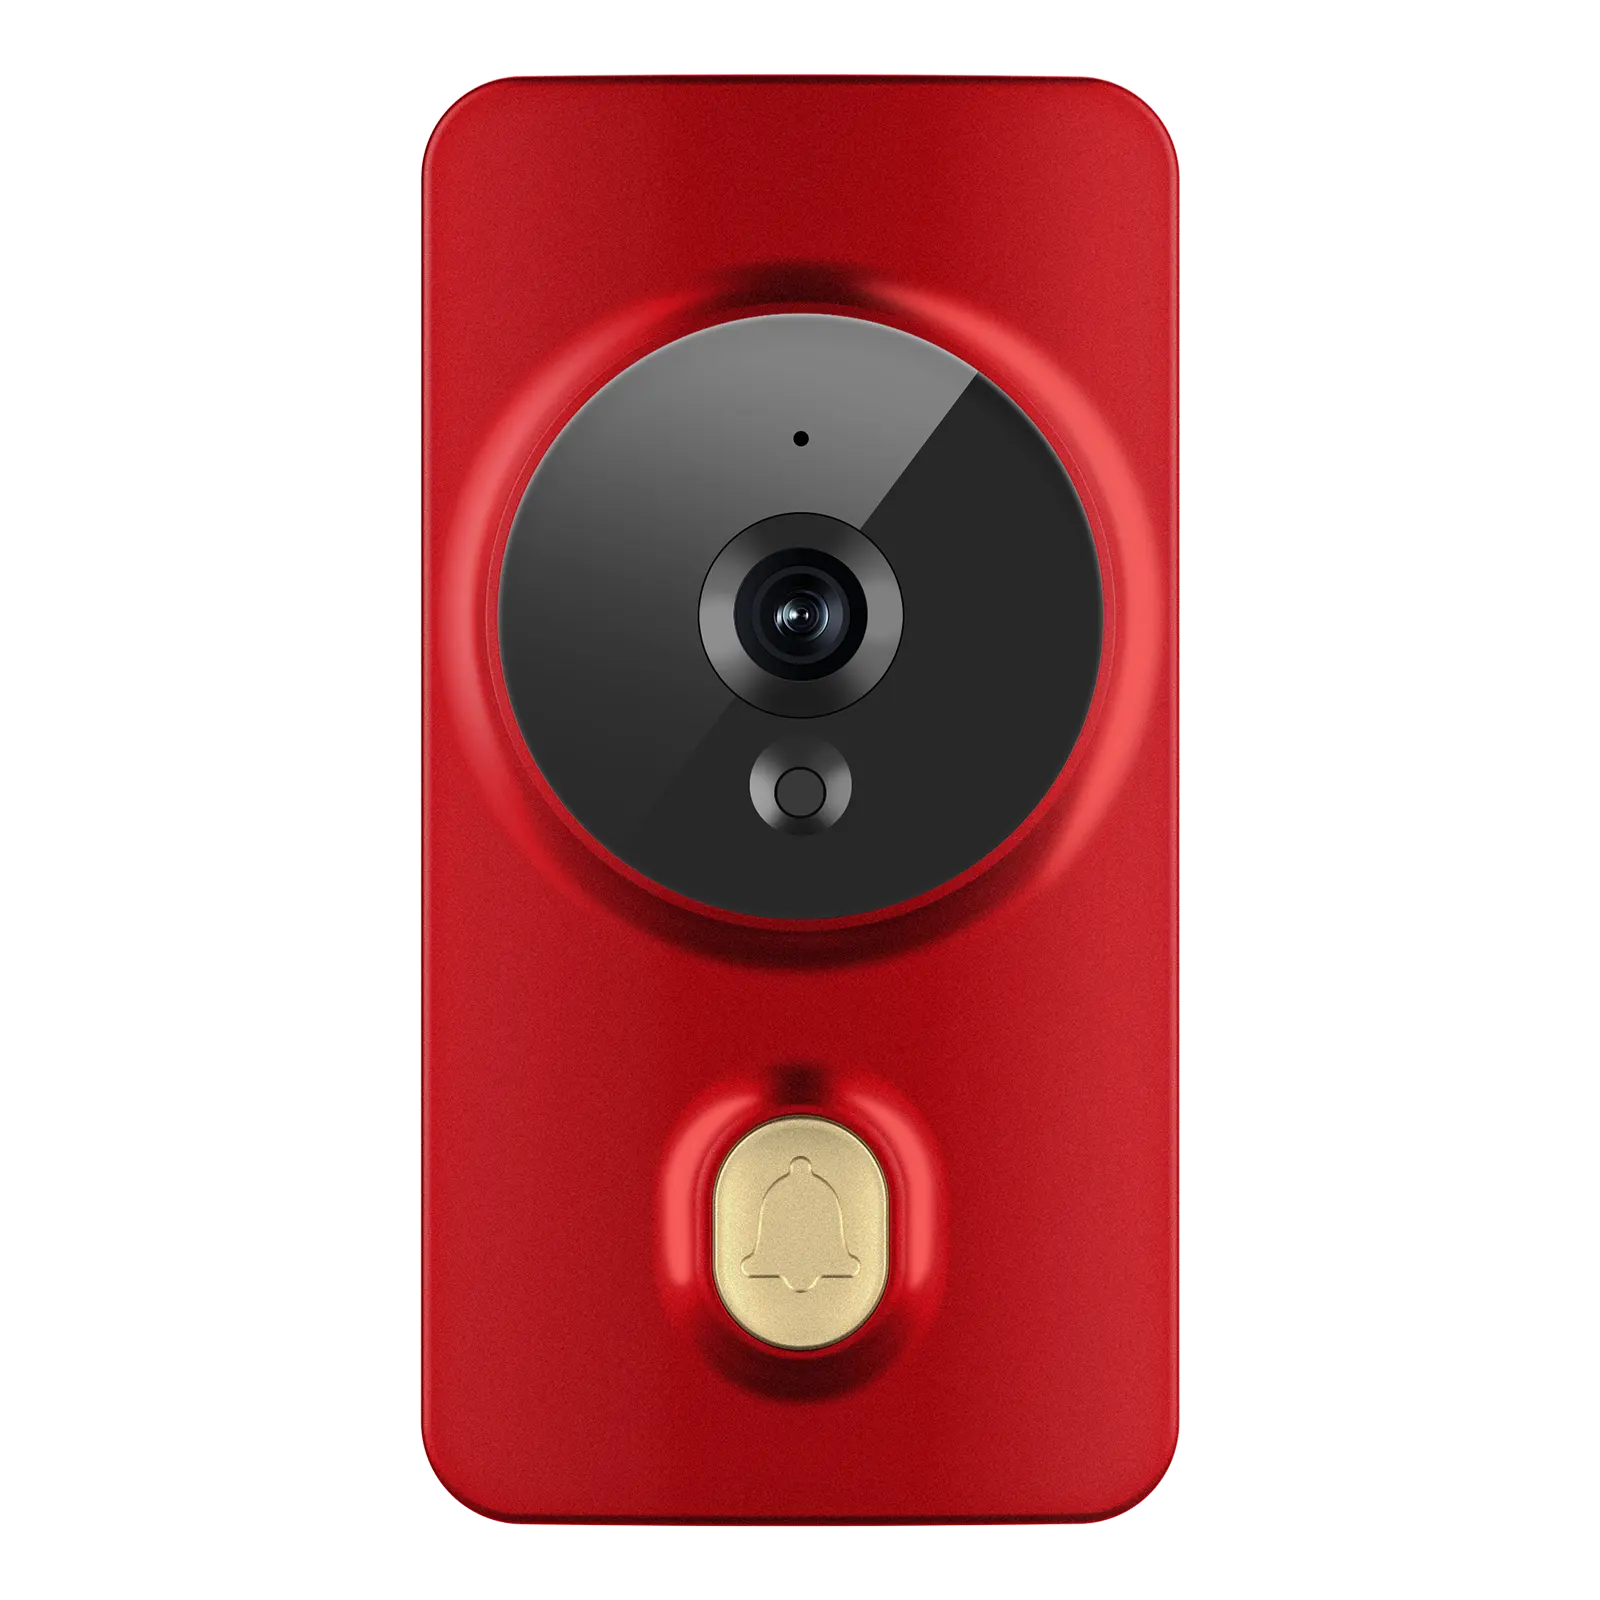 Camara de vídeo de campainha inteligente sem fio com som wi-fi e visão noturna, áudio bidirecional